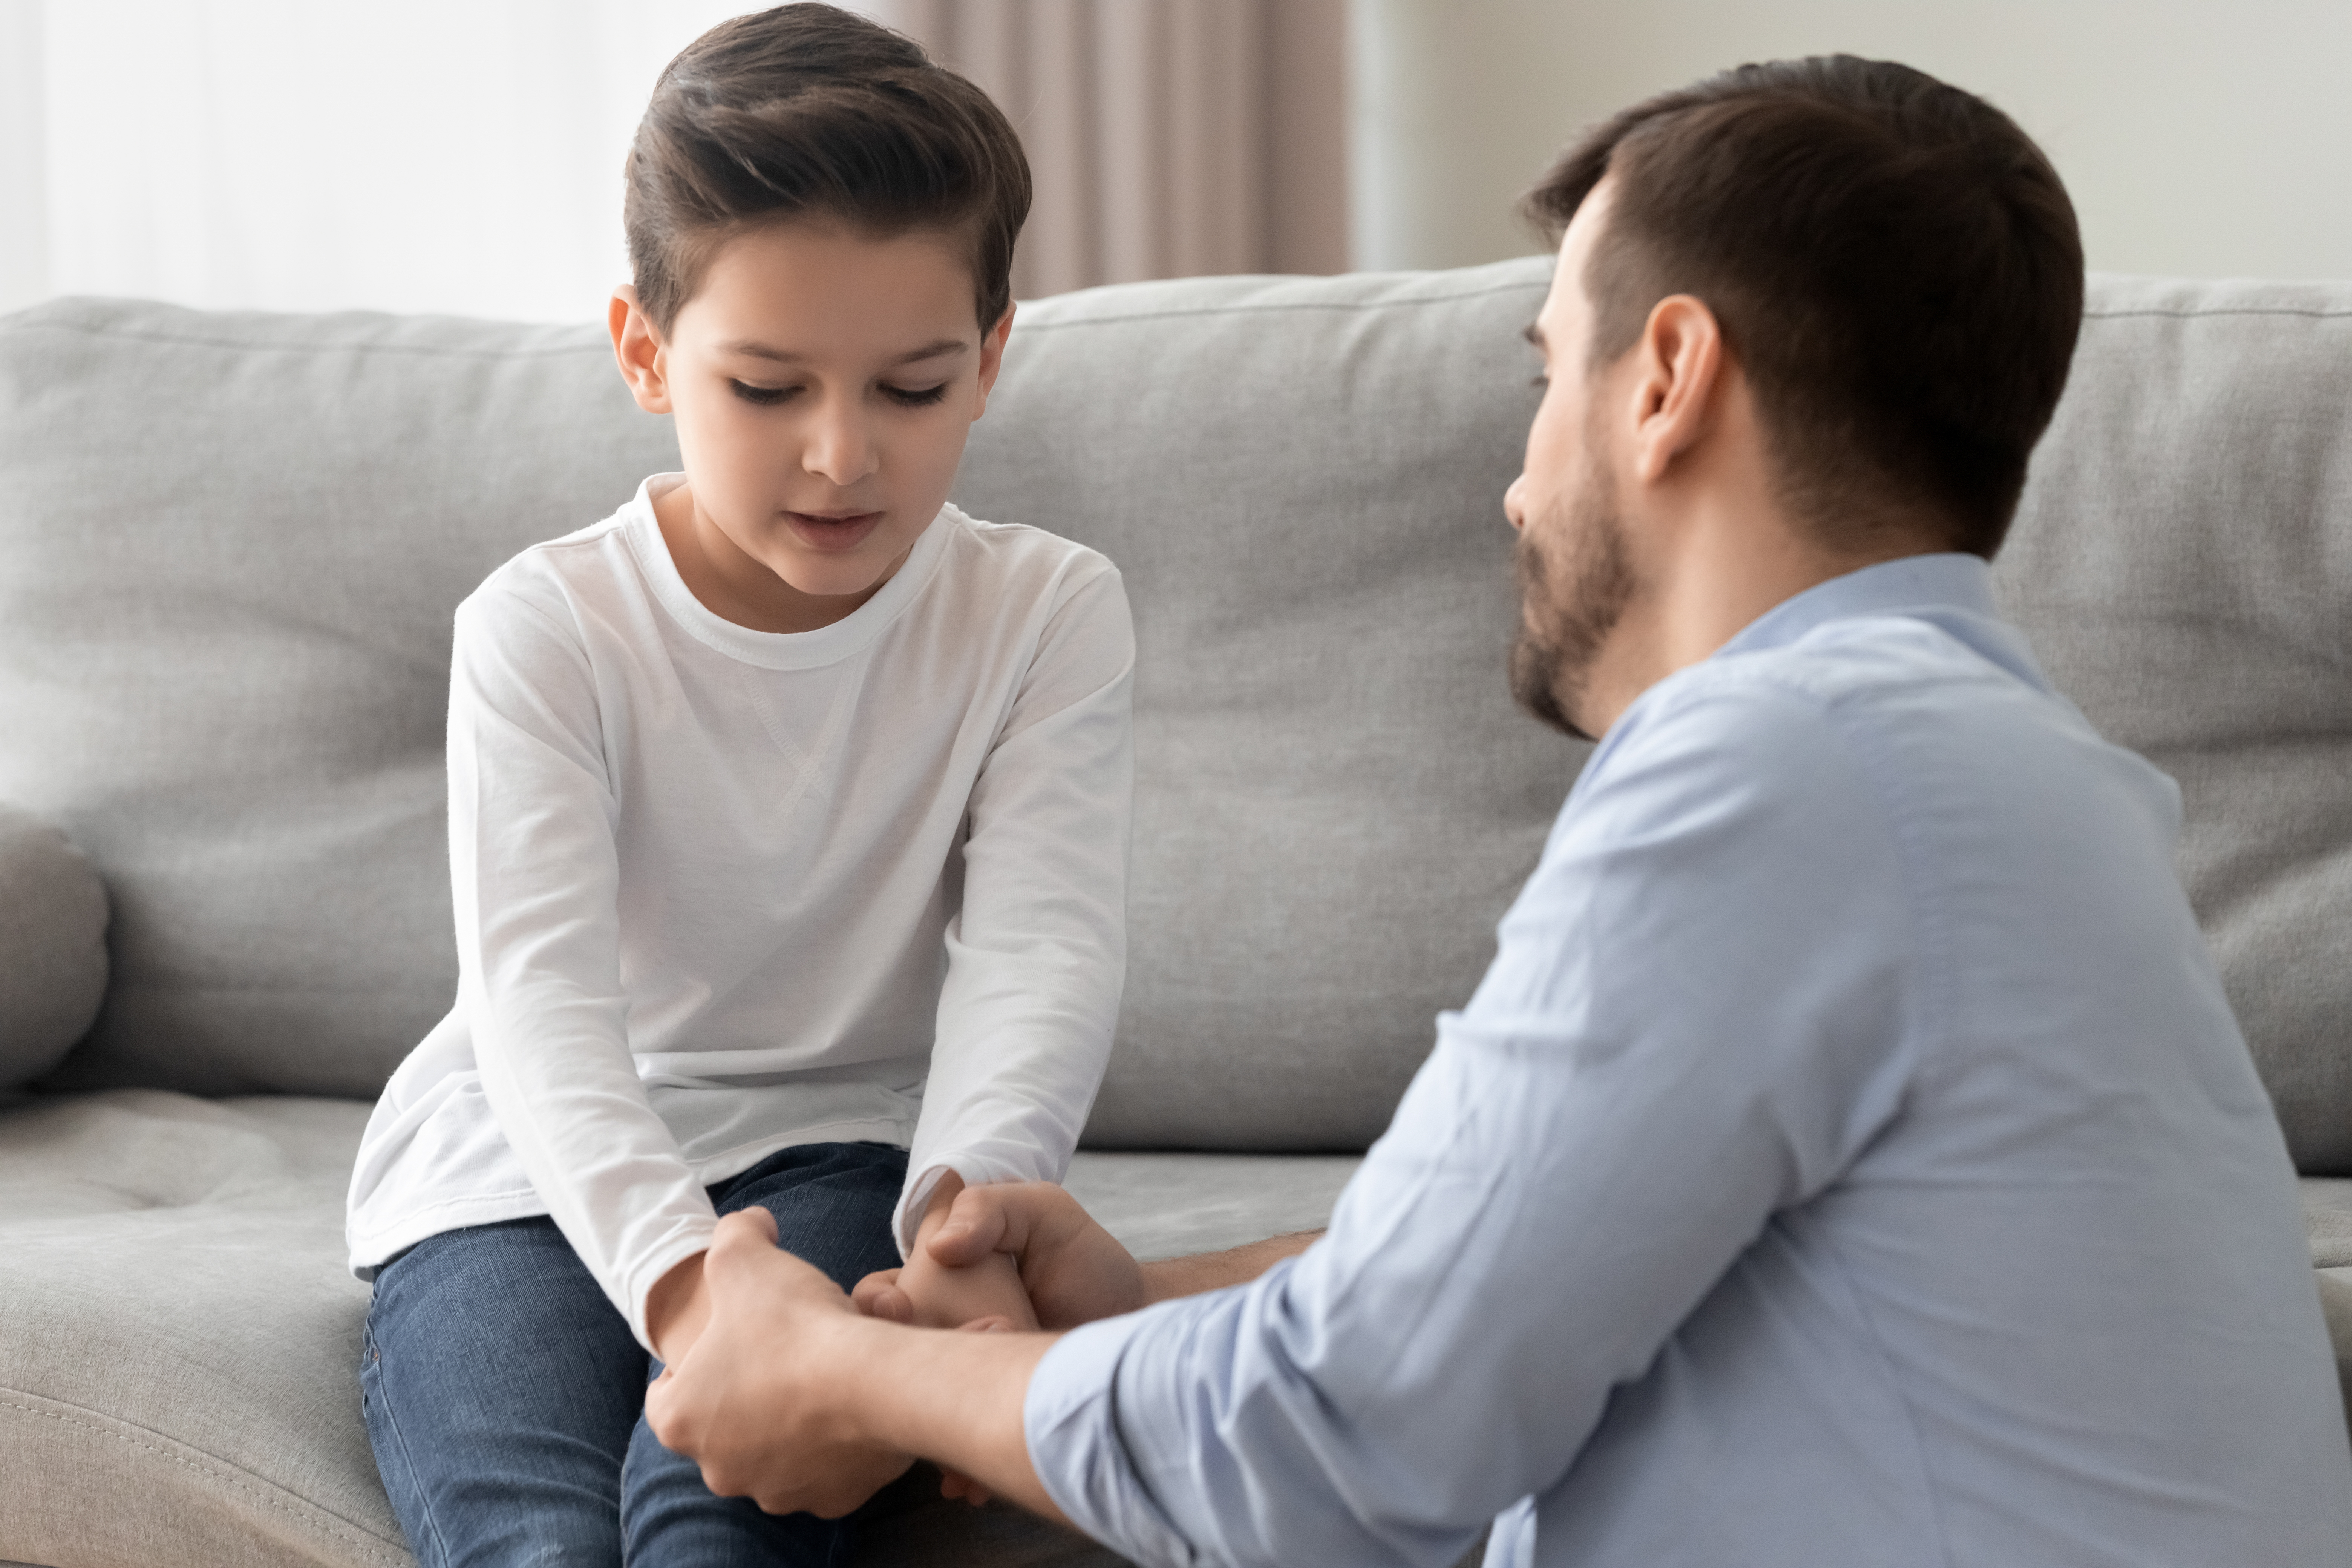 Un niño triste habla con su padre | Fuente: Shutterstock.com